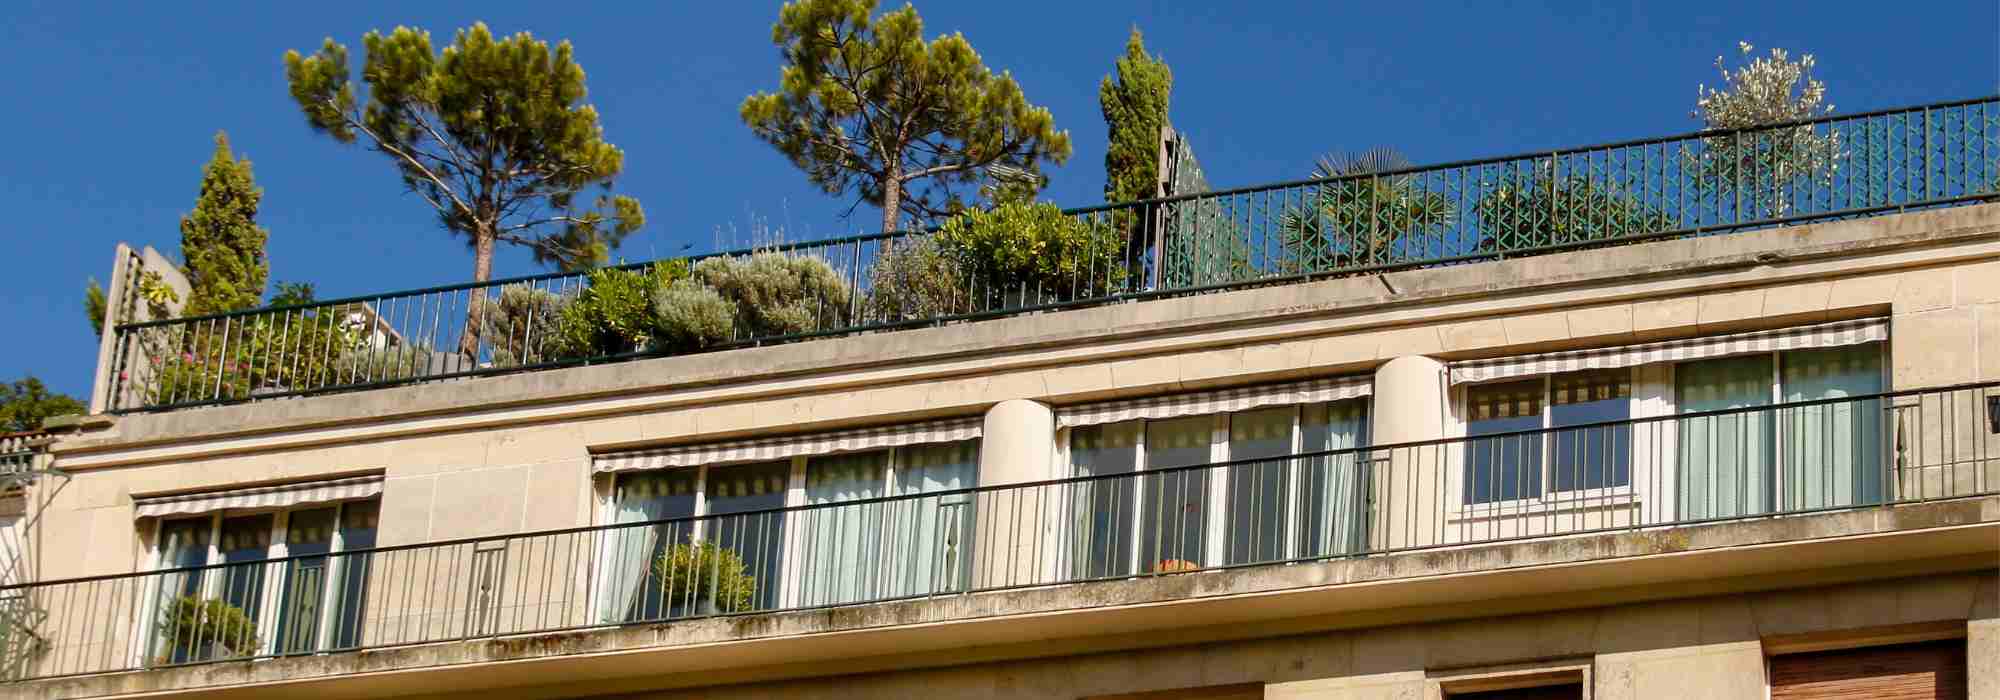 8 idées pour protéger votre balcon ou terrasse contre la pluie